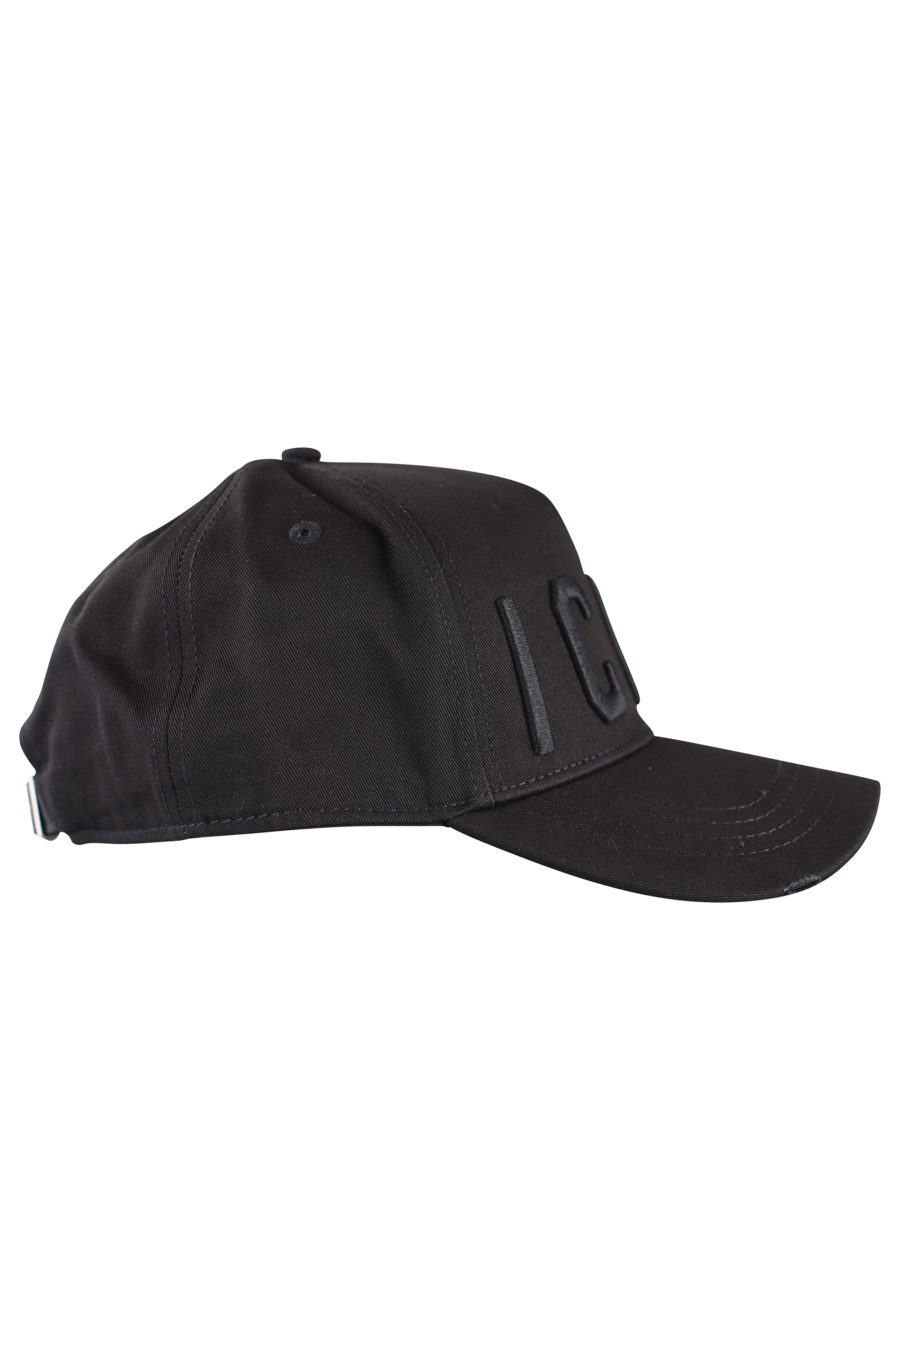 Gorra negra ajustable con logo "icon" negro - IMG 9972